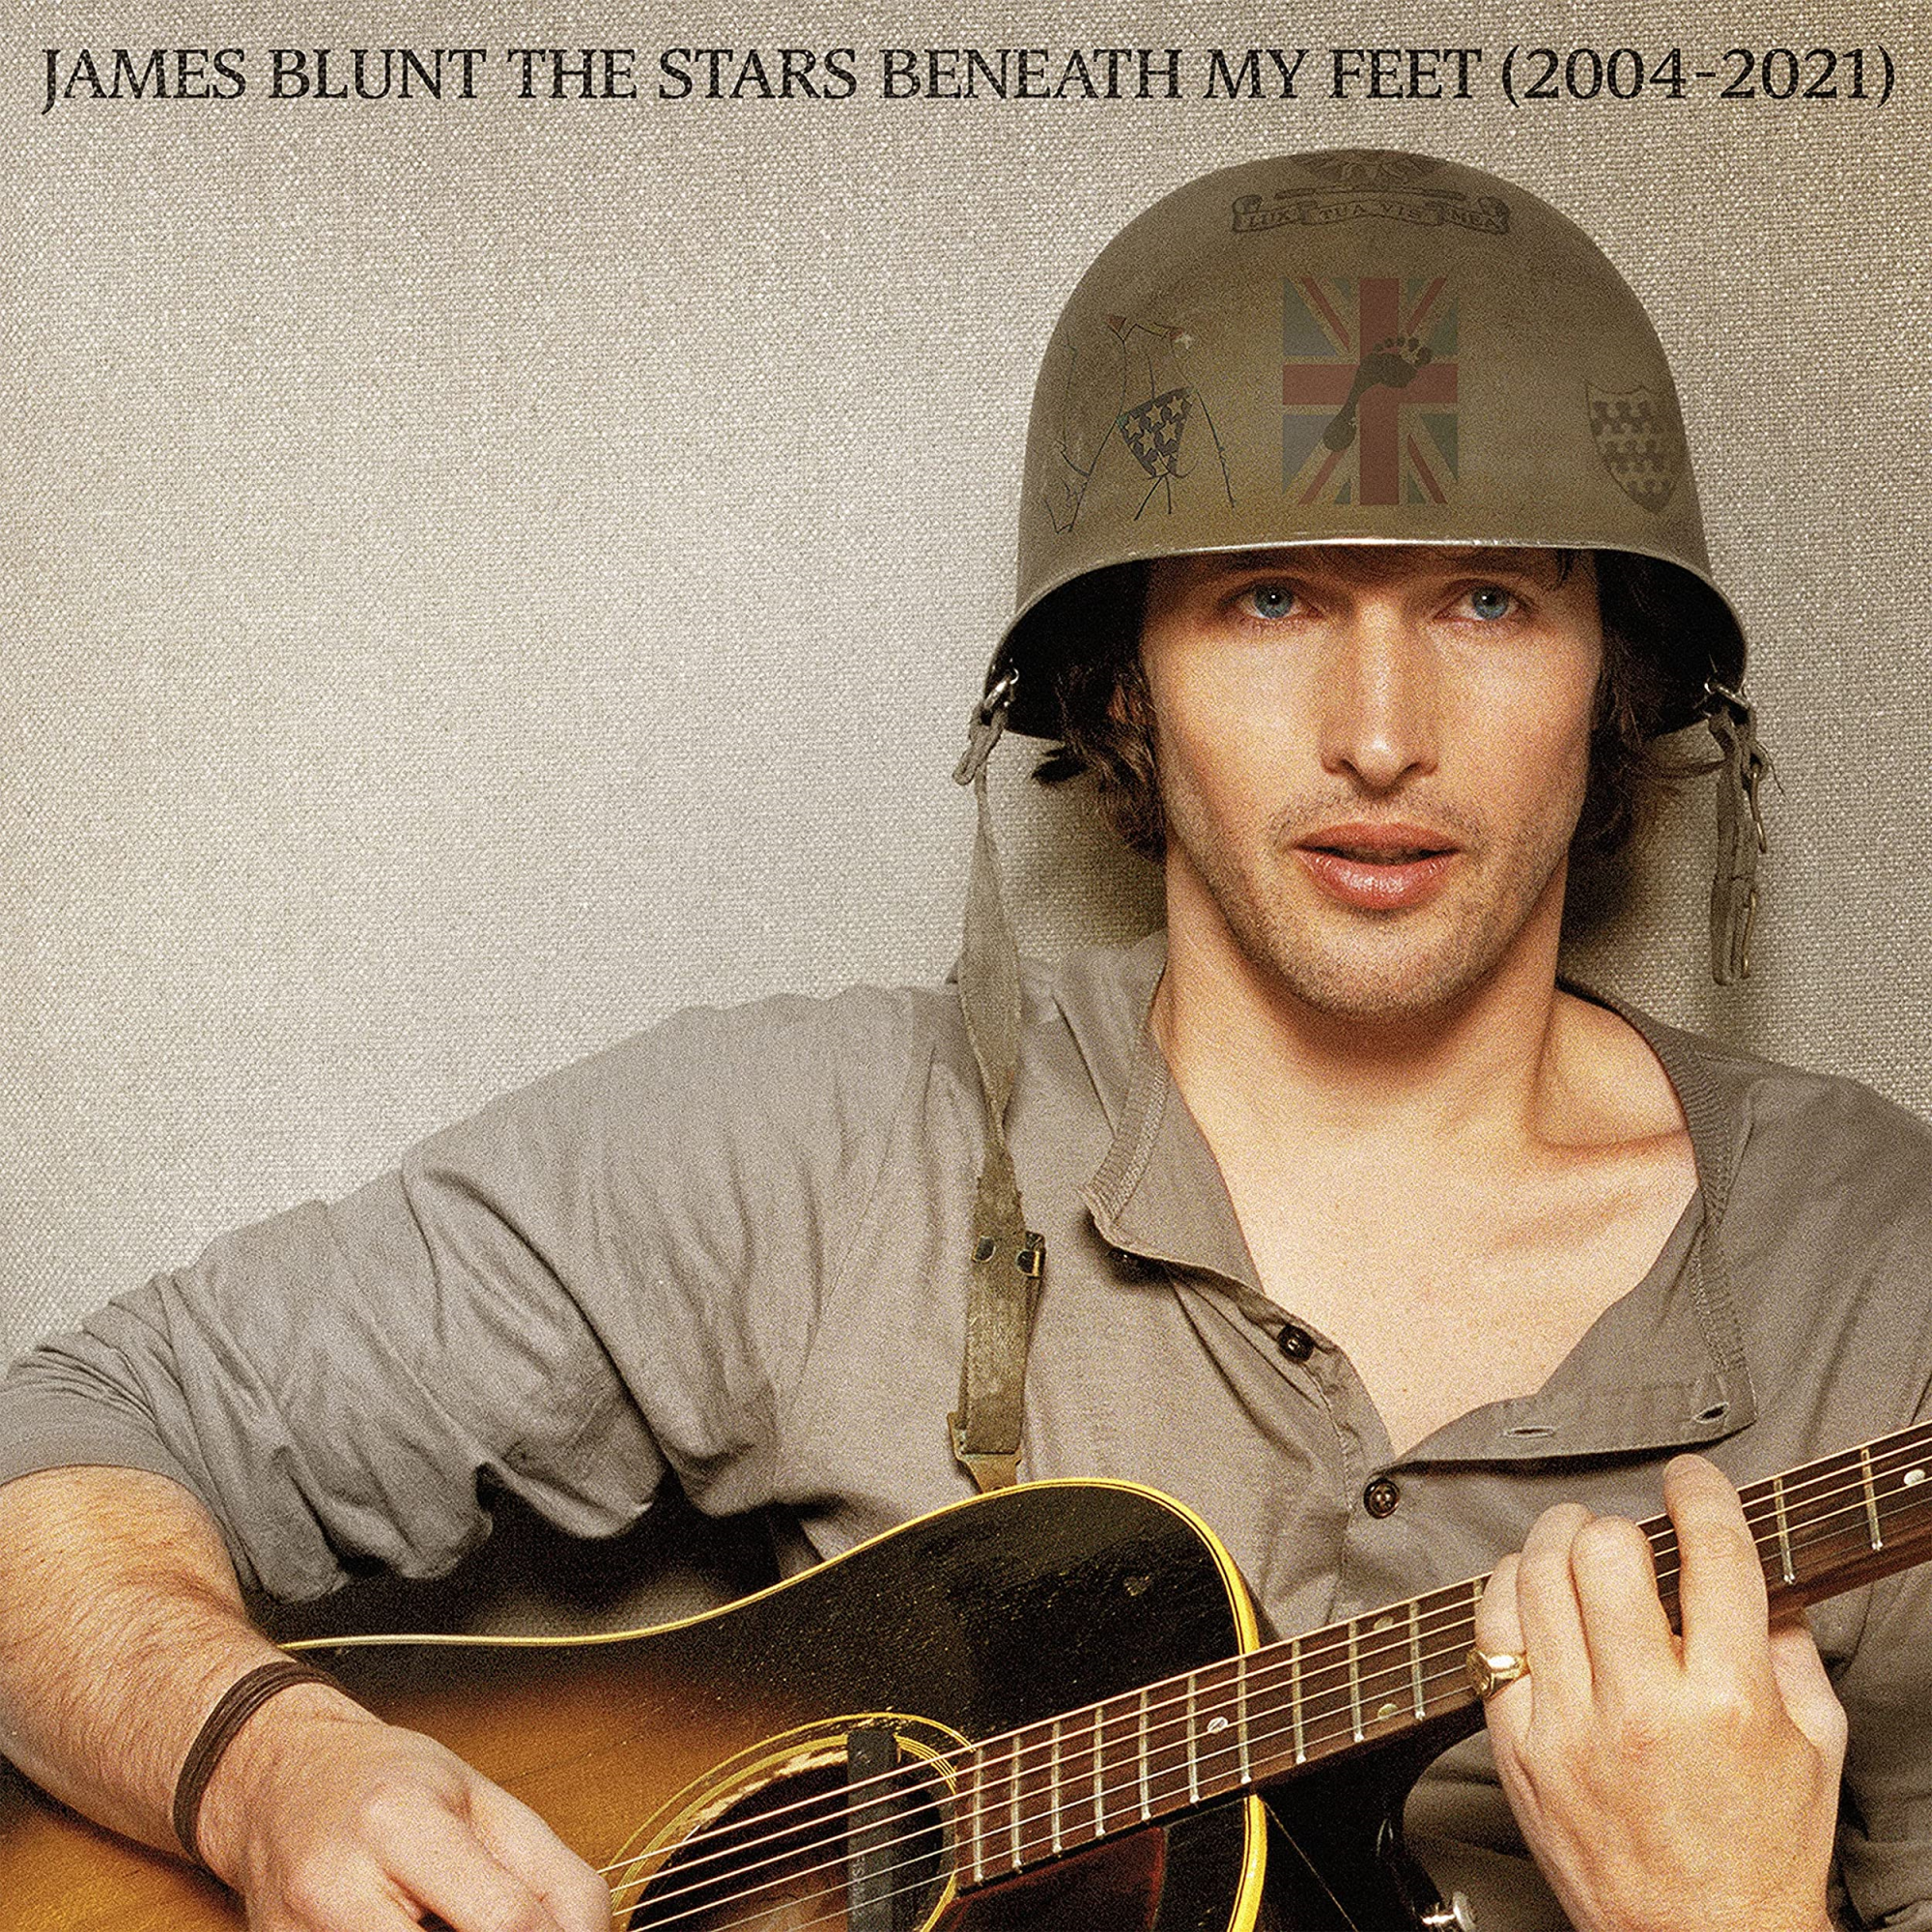 Vinile James Blunt - The Stars Beneath My Feet (2004-2021) (2 Lp) NUOVO SIGILLATO, EDIZIONE DEL 31/12/2021 SUBITO DISPONIBILE